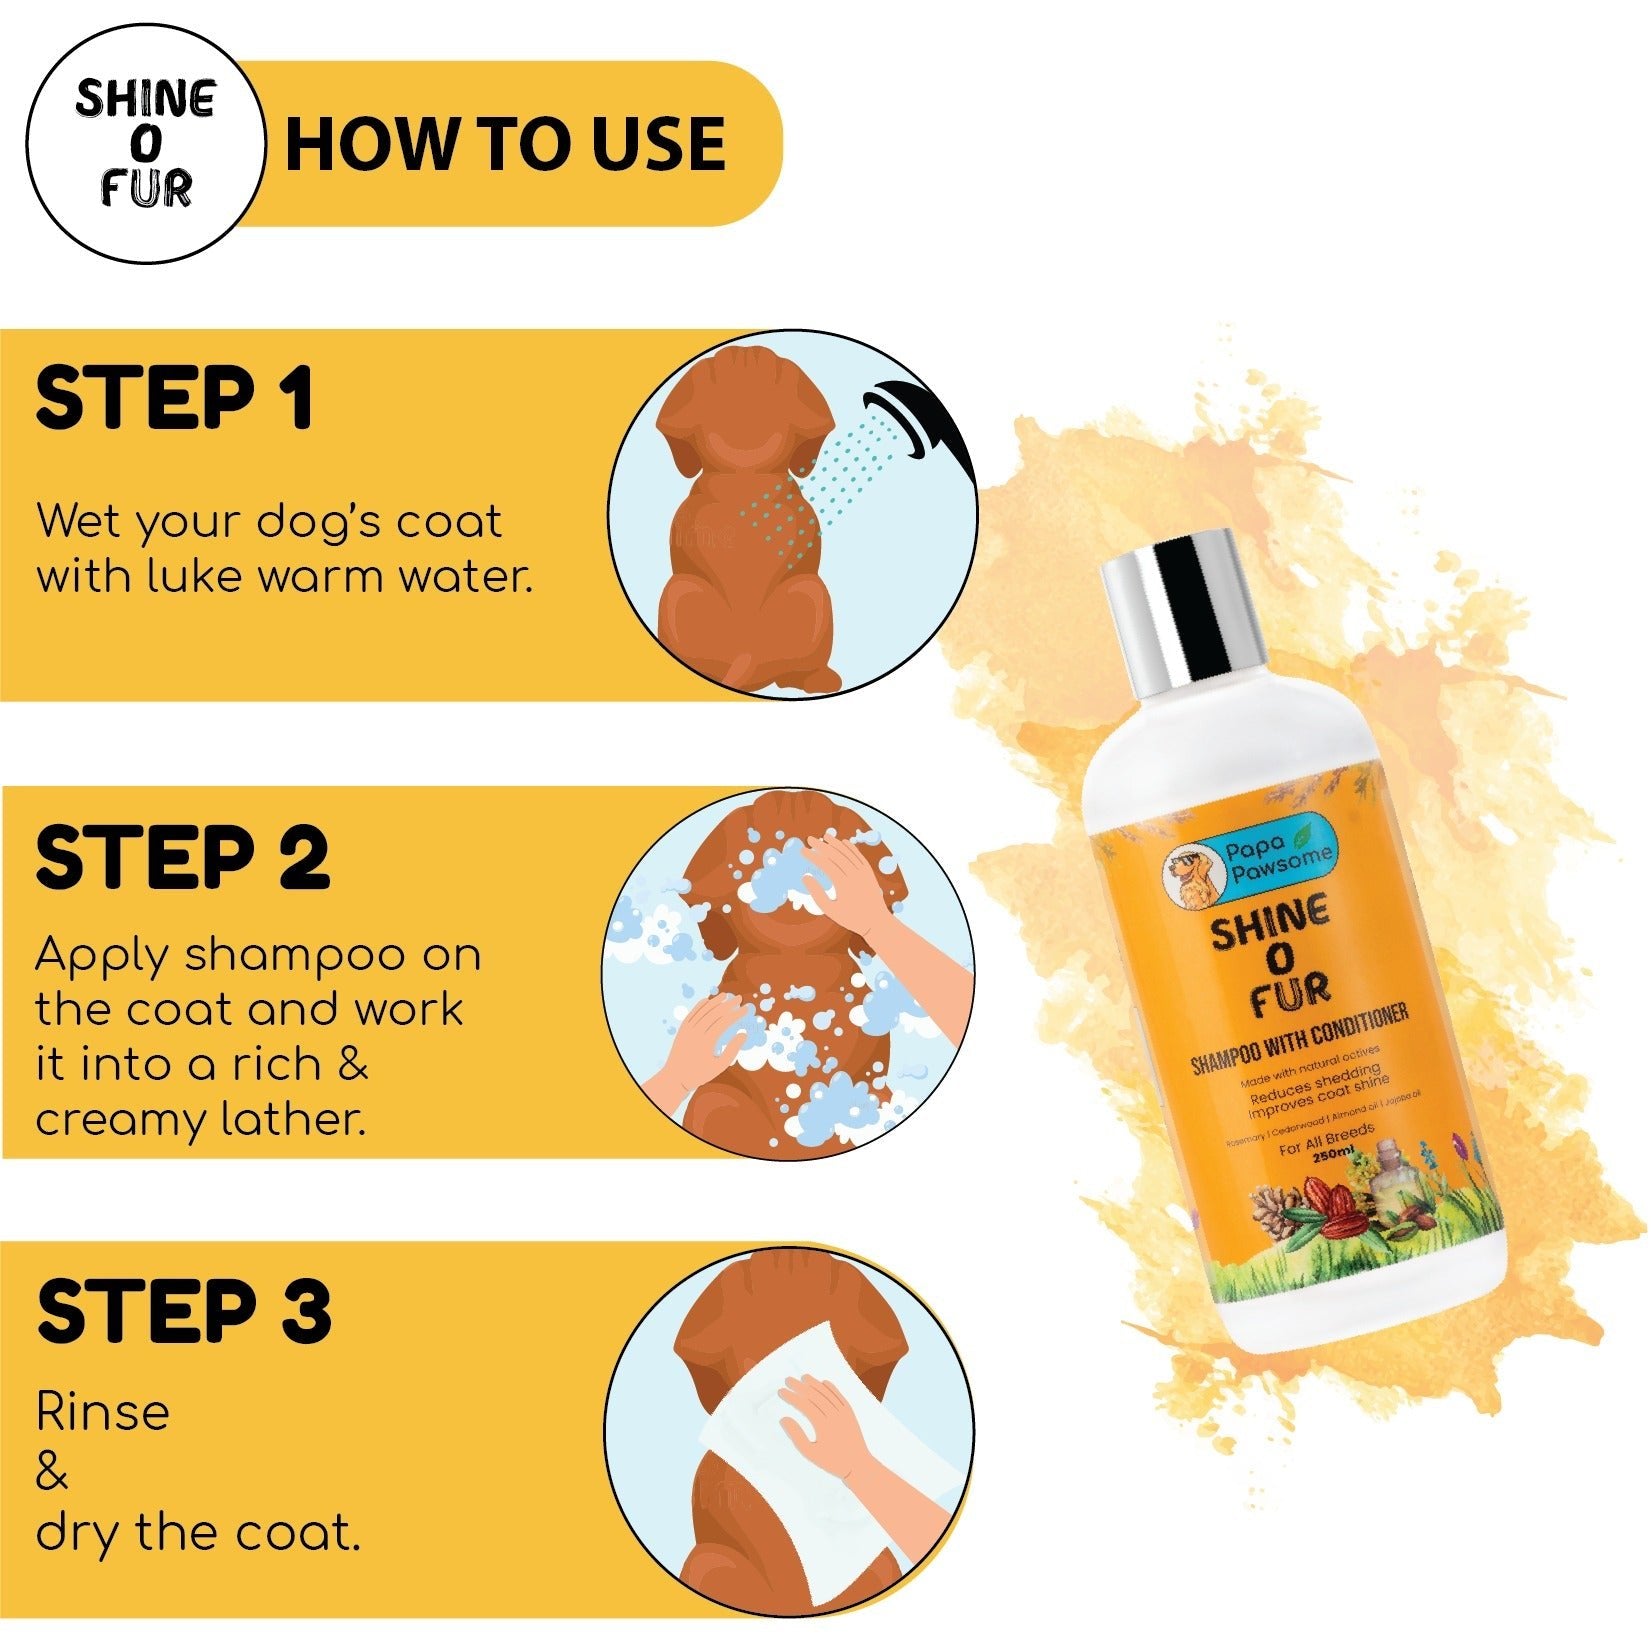 Papa Pawsome Shine O' Fur Shampoo with Conditioner for Dogs, 250ml - Wagr - The Smart Petcare Platform